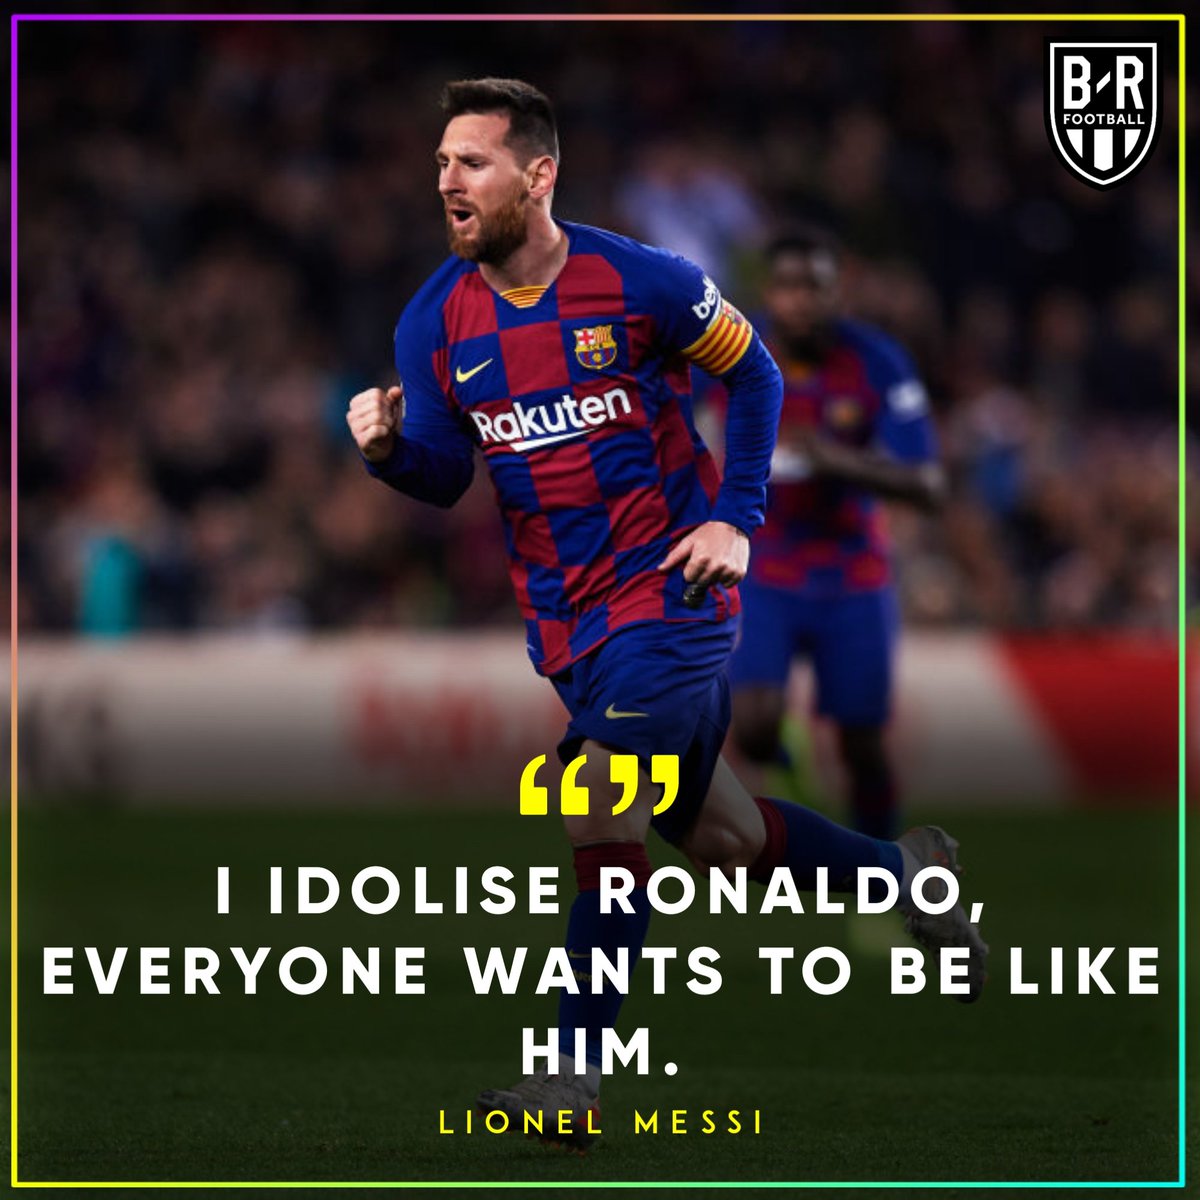  Messi: I idolise Ronaldo.